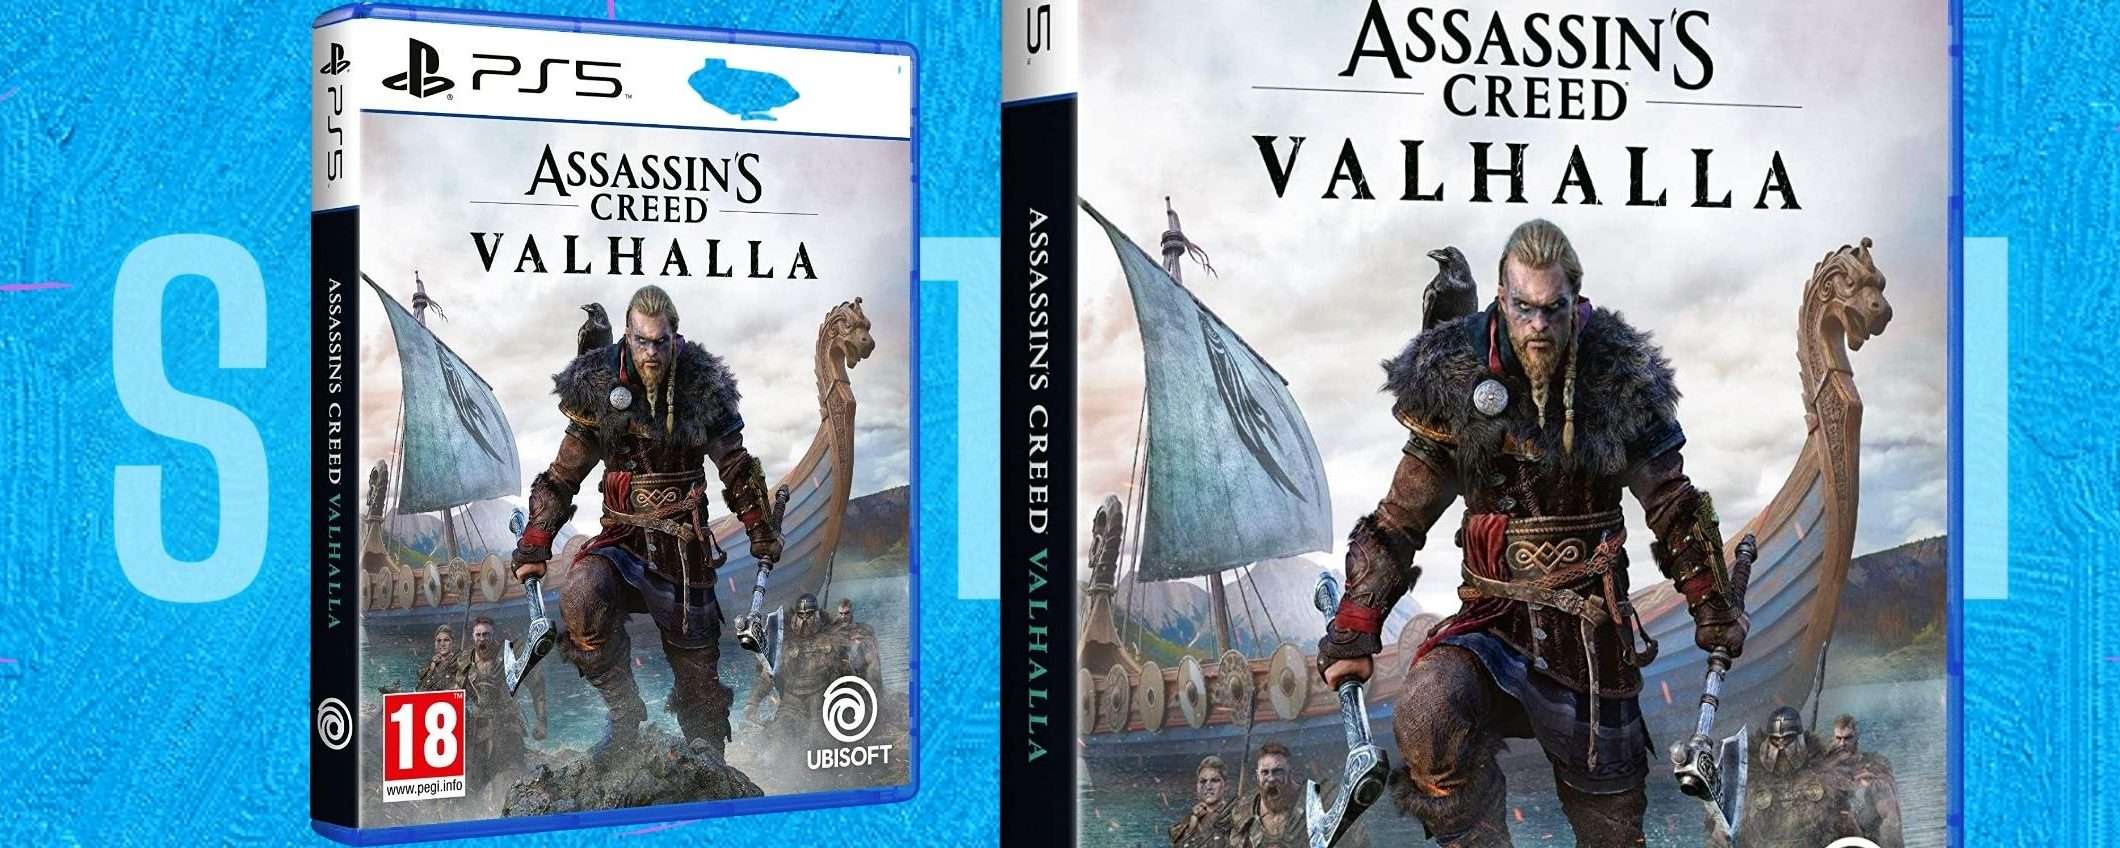 Assassin's Creed Valhalla, piccolo prezzo sulla variante PS5